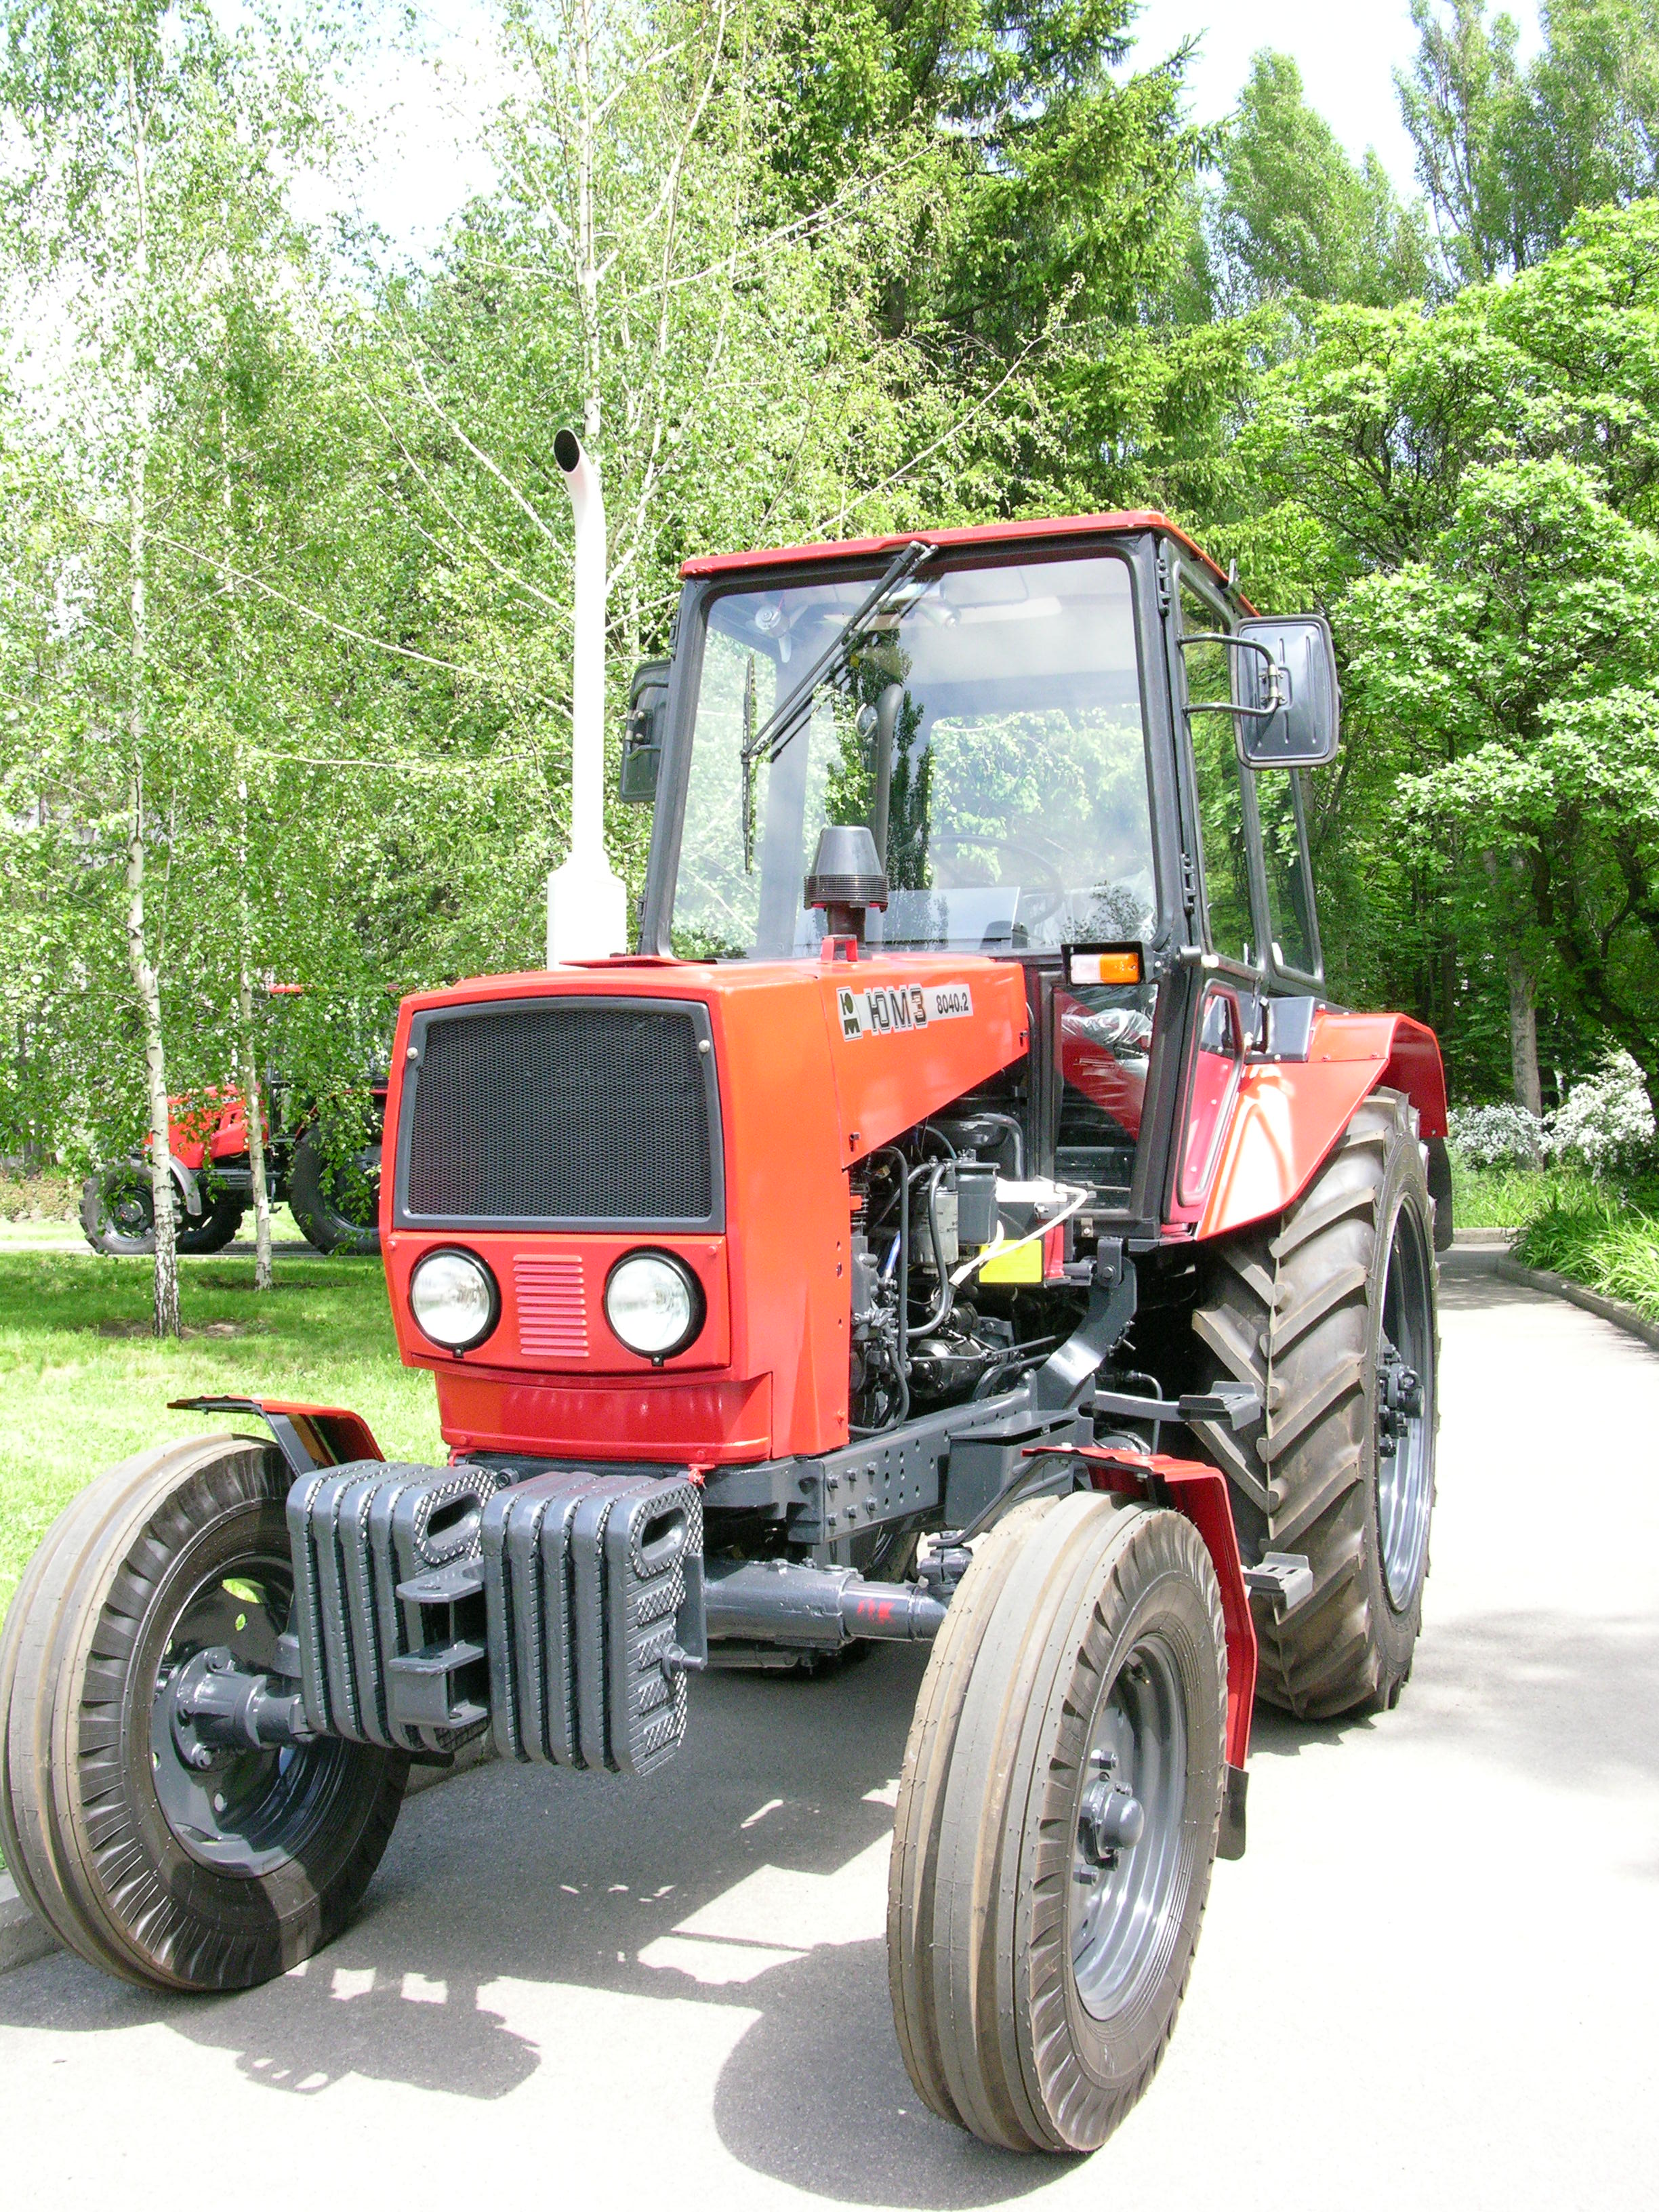 Yuzhmash YuMZ-8040.2 tractor